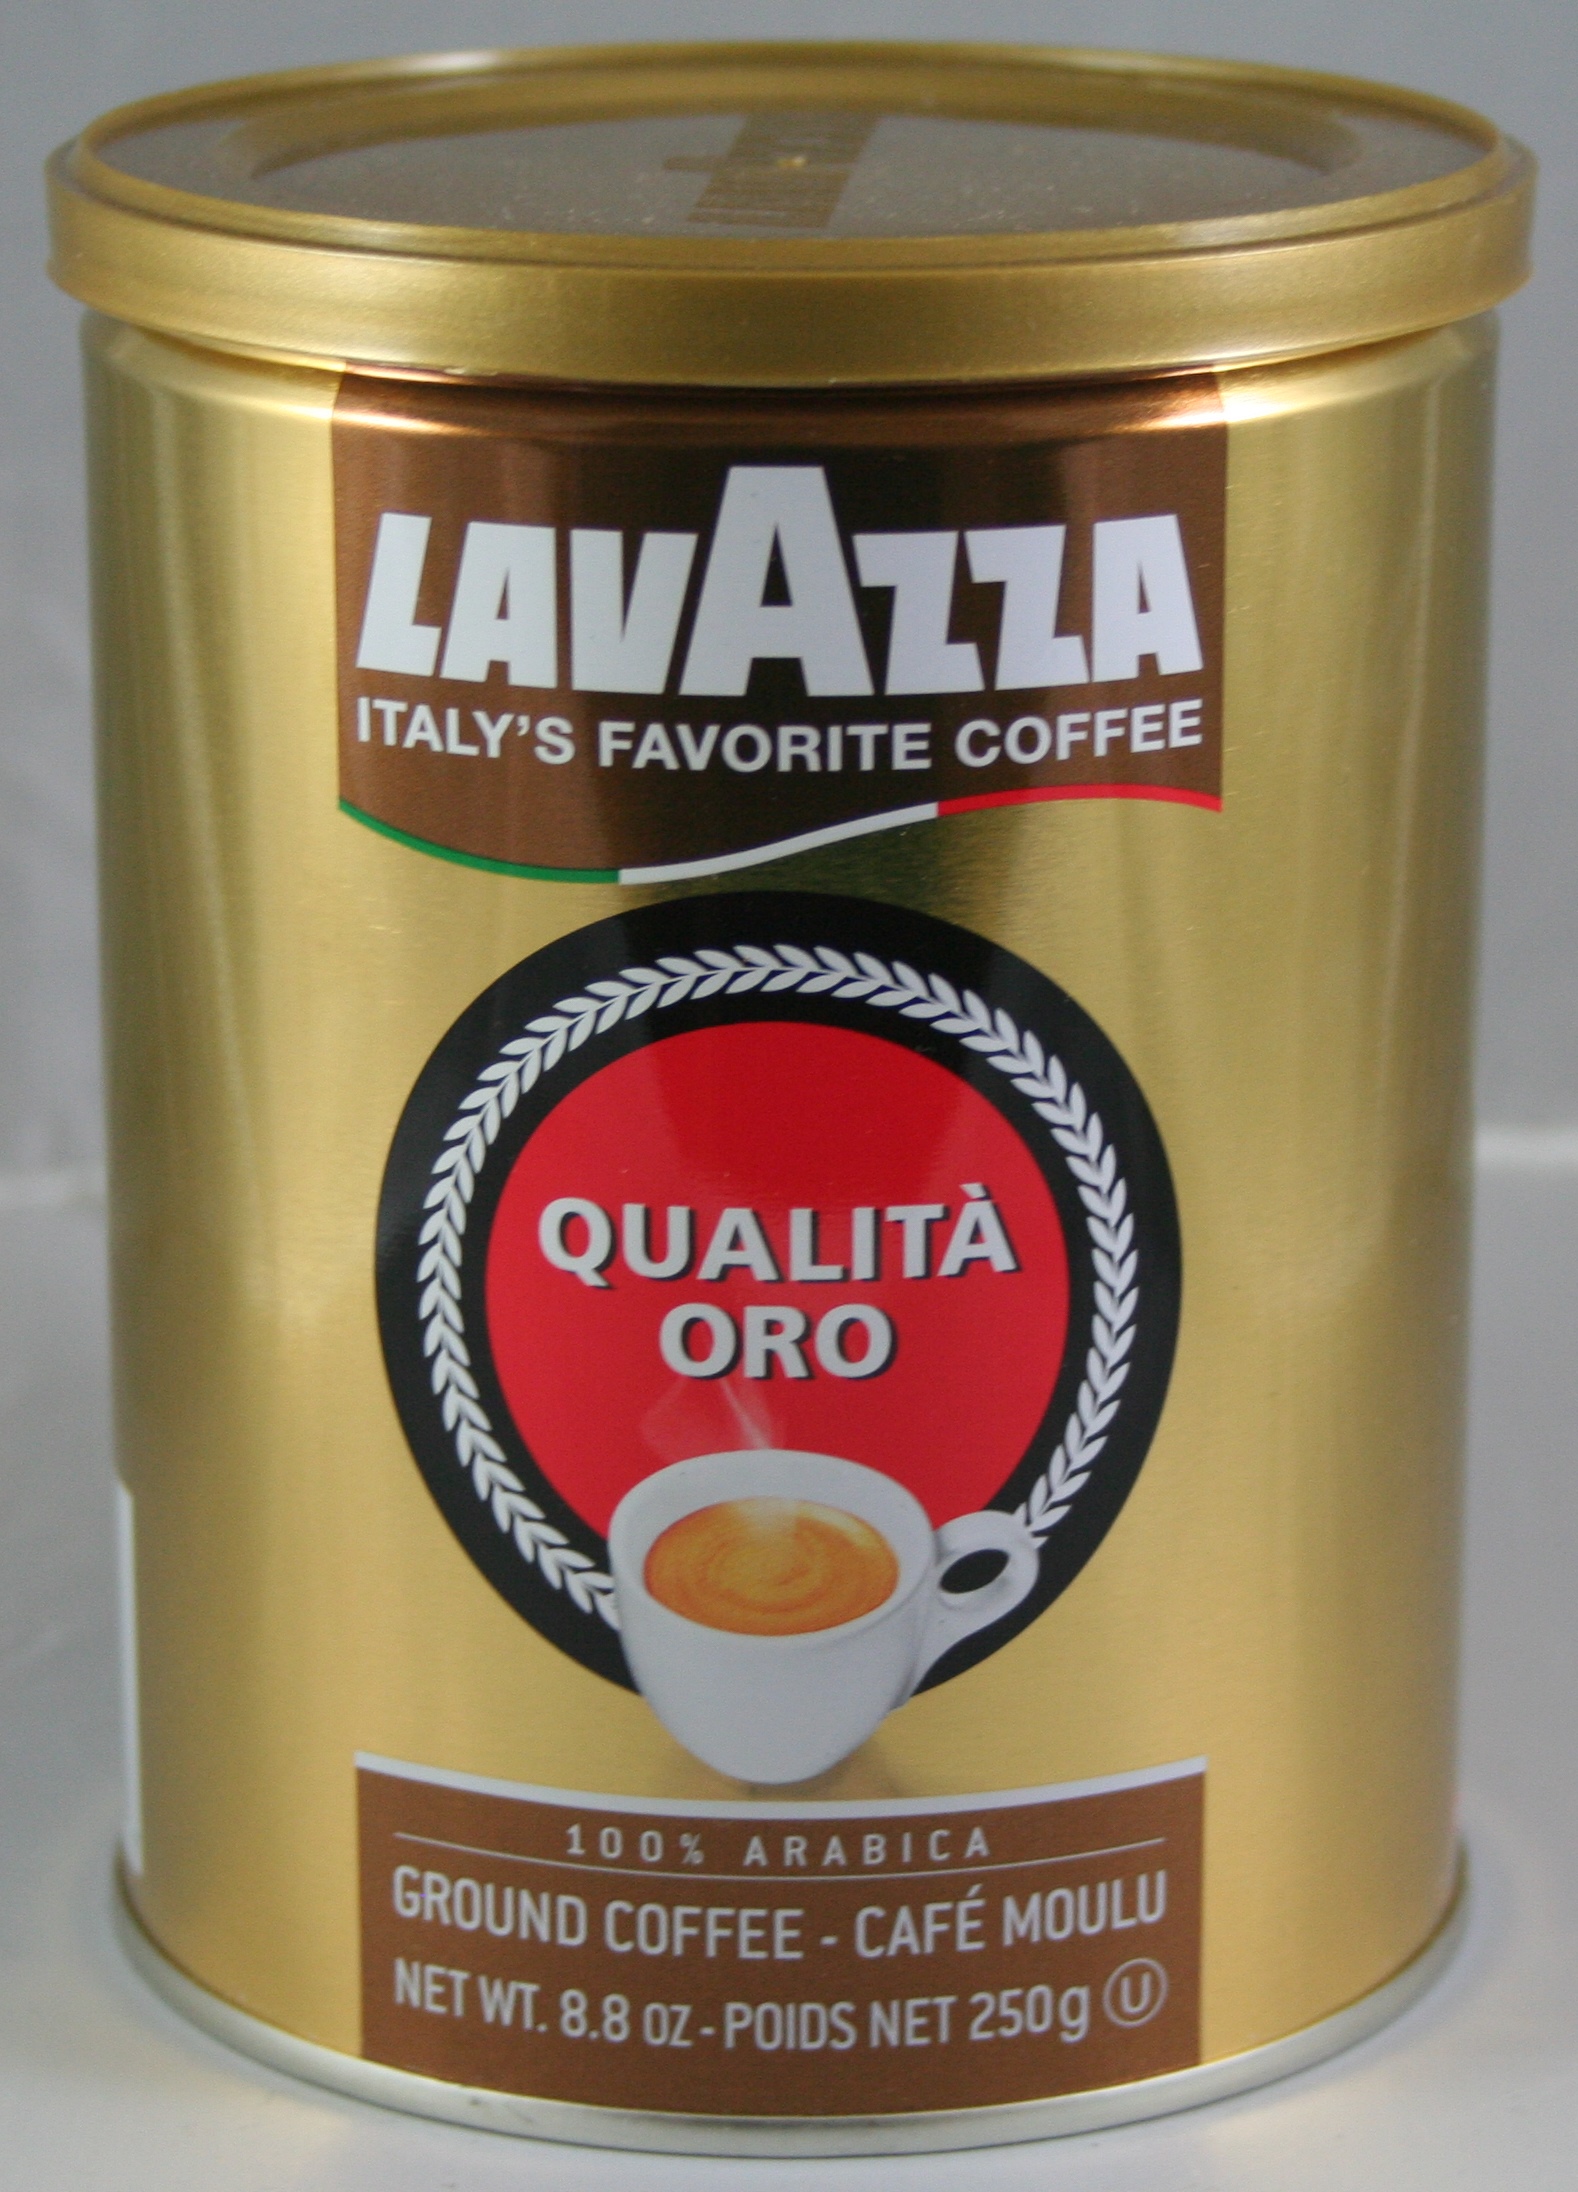 Cups Espresso Premium Collection, Lavazza